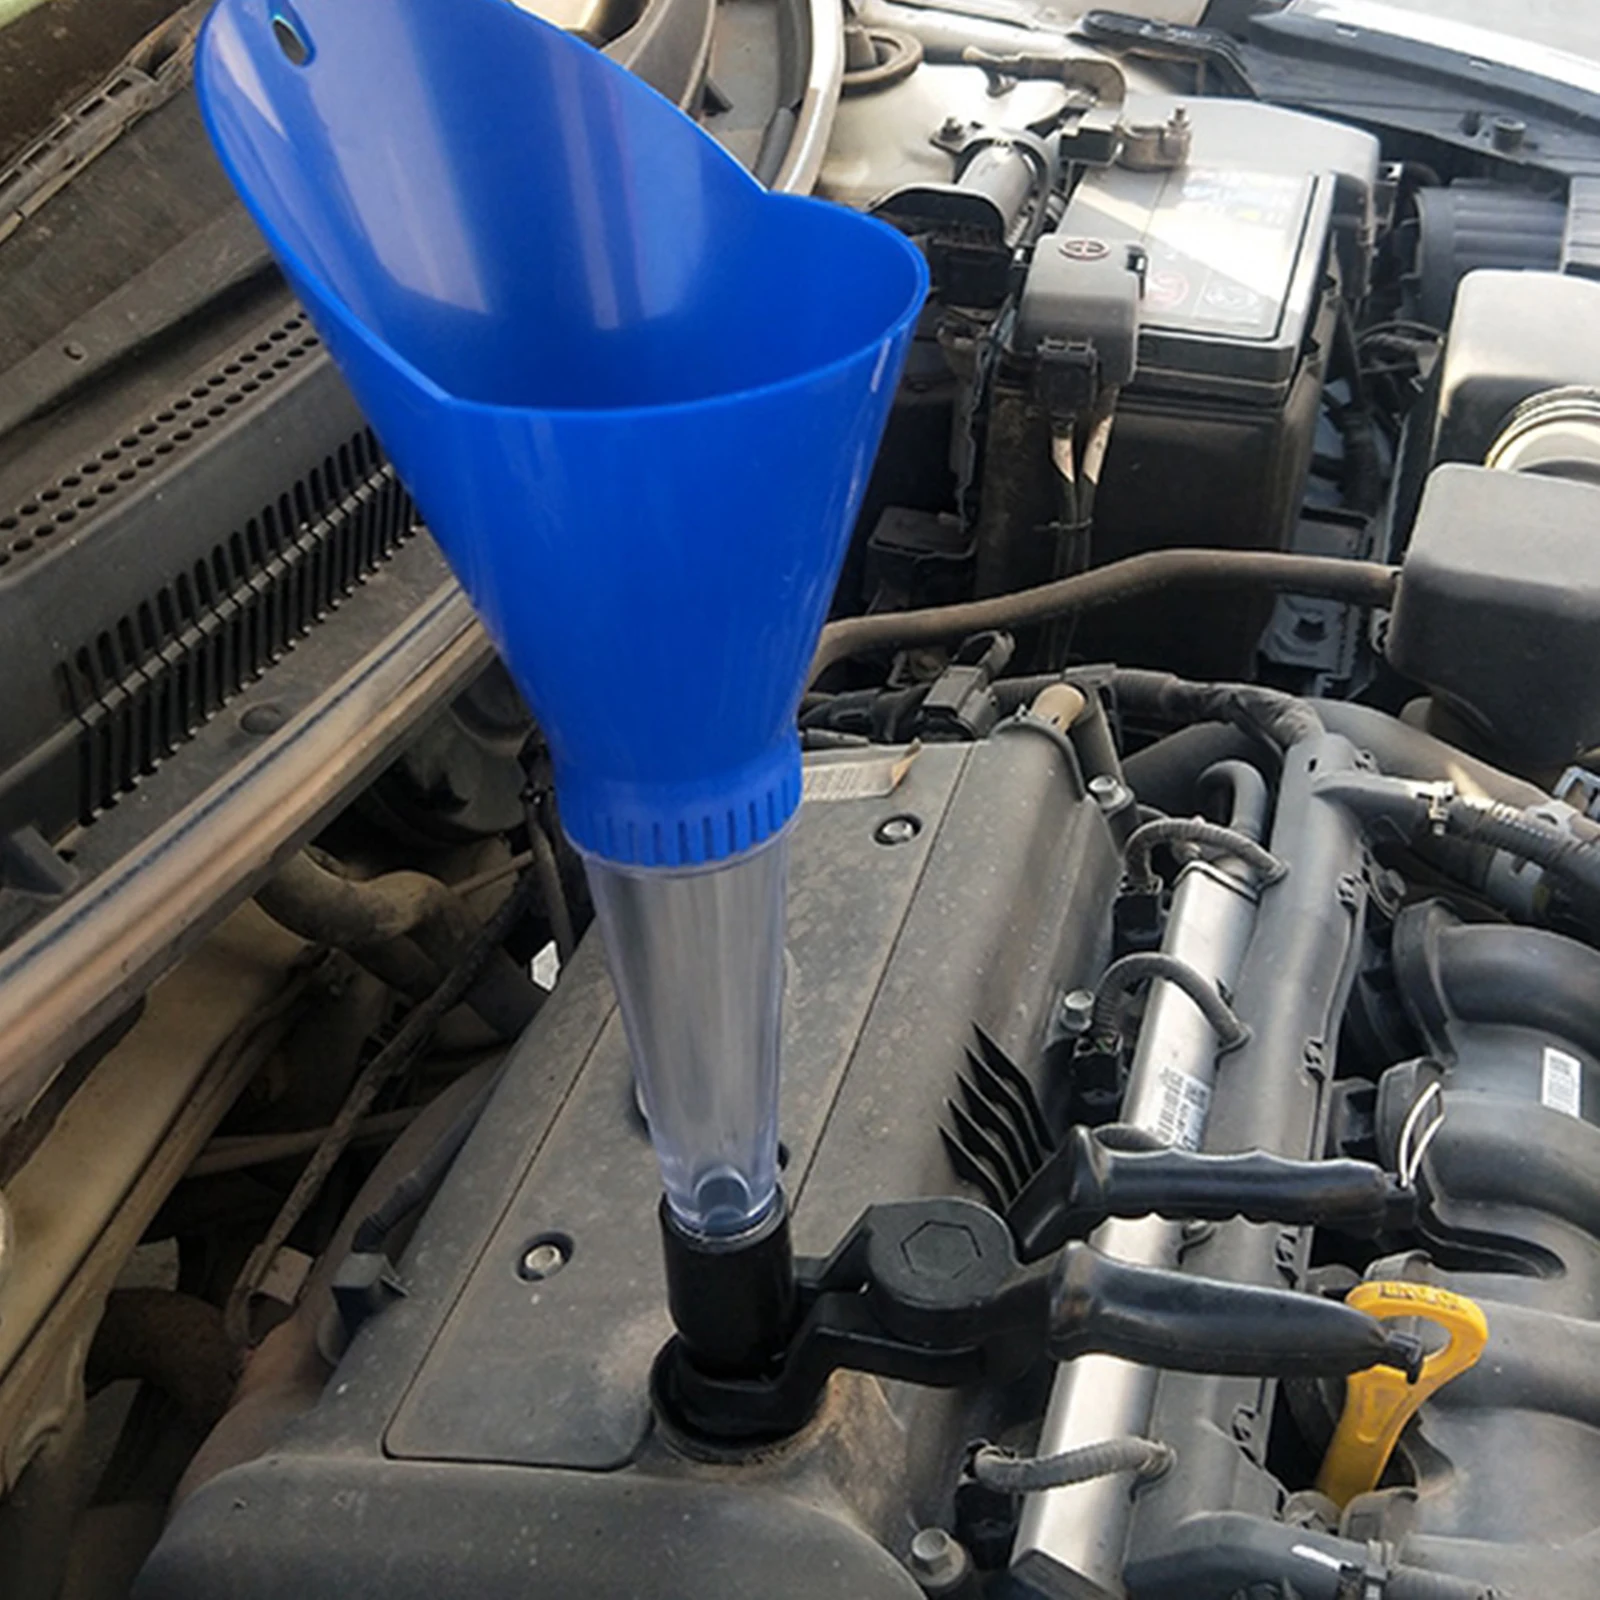 Plastic Universal Car Engine Oil Funnel Kit Avoid Spills Easy To Clean